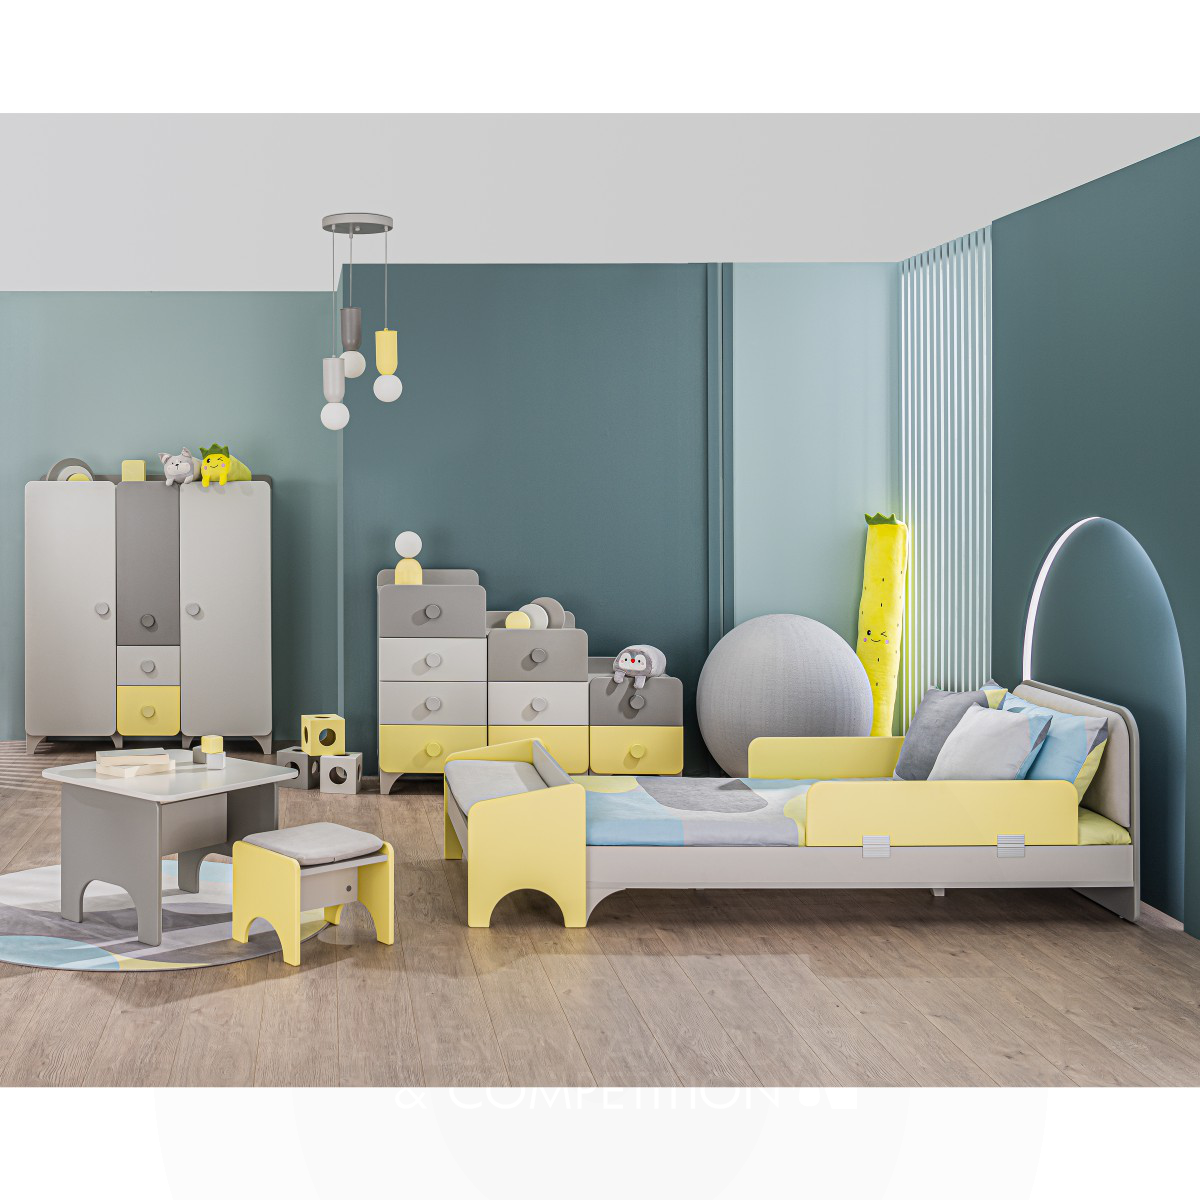  Child Room Furniture Set